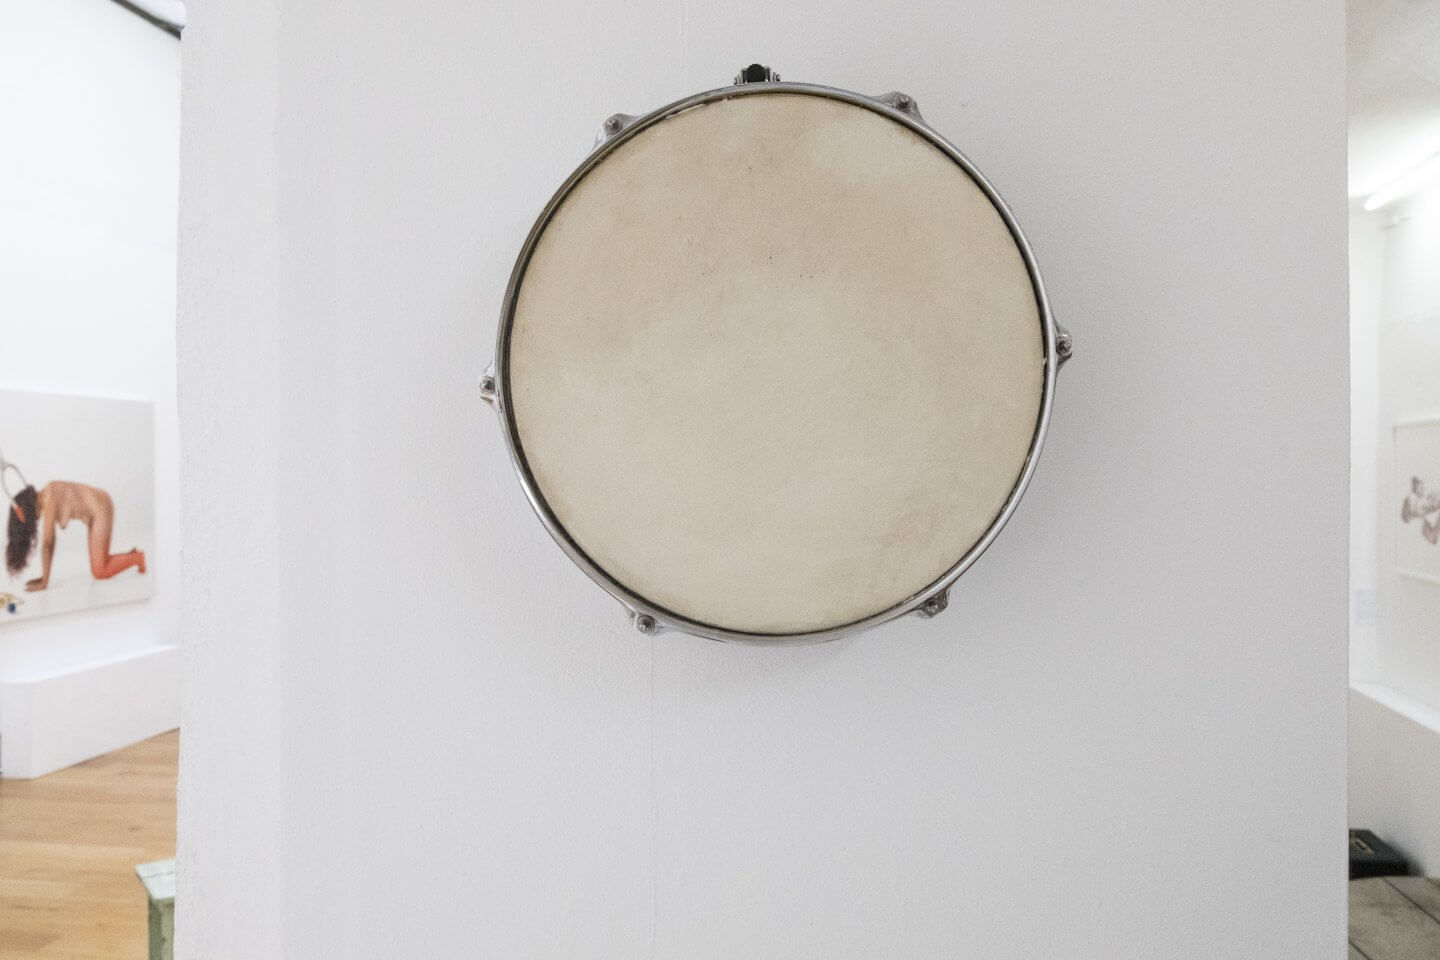 Galerie Benjamin Eck München Oil on snare drum